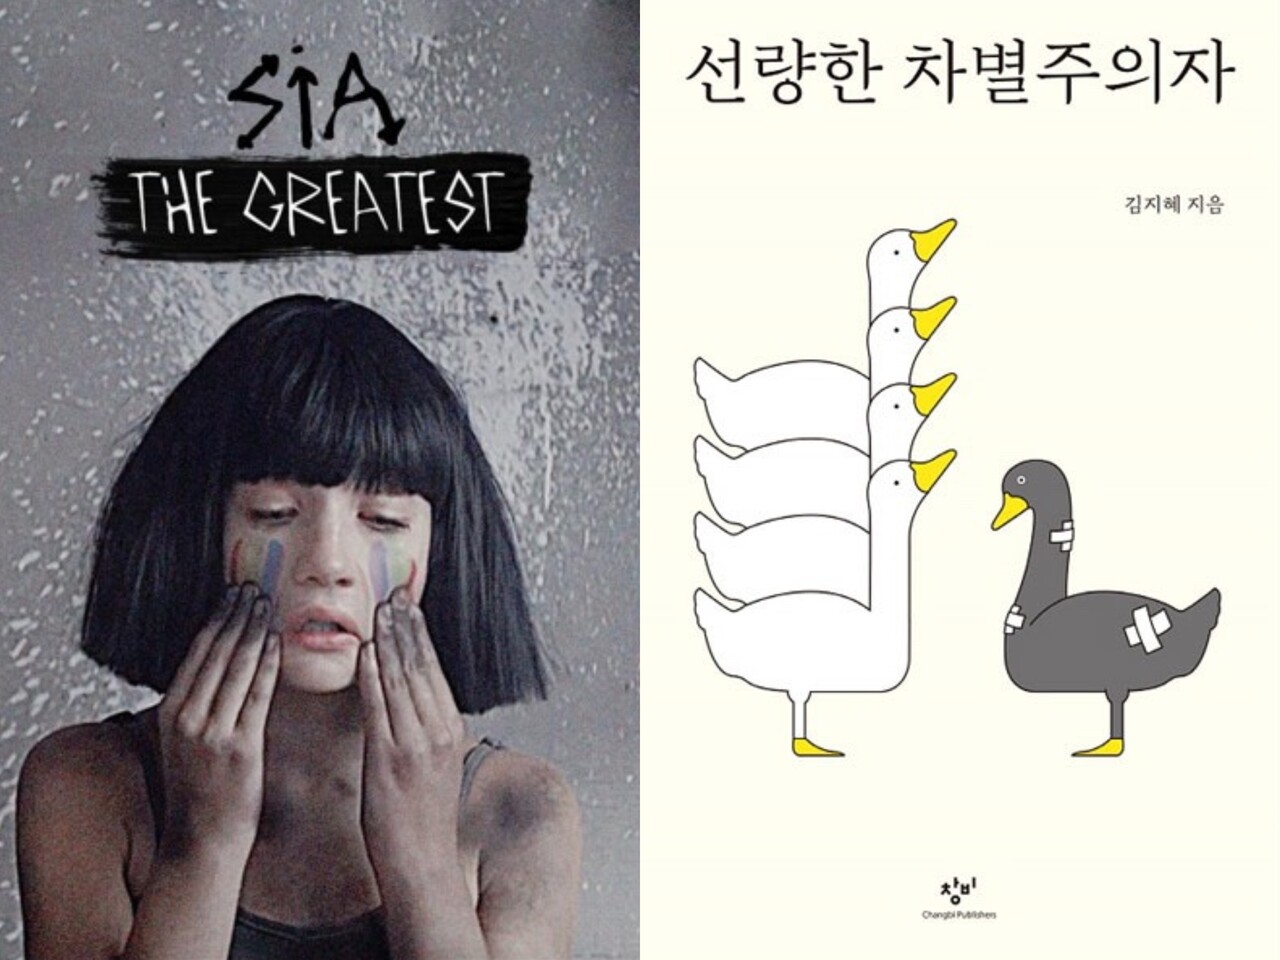 가수 Sia의 'The Greatest' 대표사진 (좌), '선량한 차별주의자' 표지 이미지 (우) 출처 창비